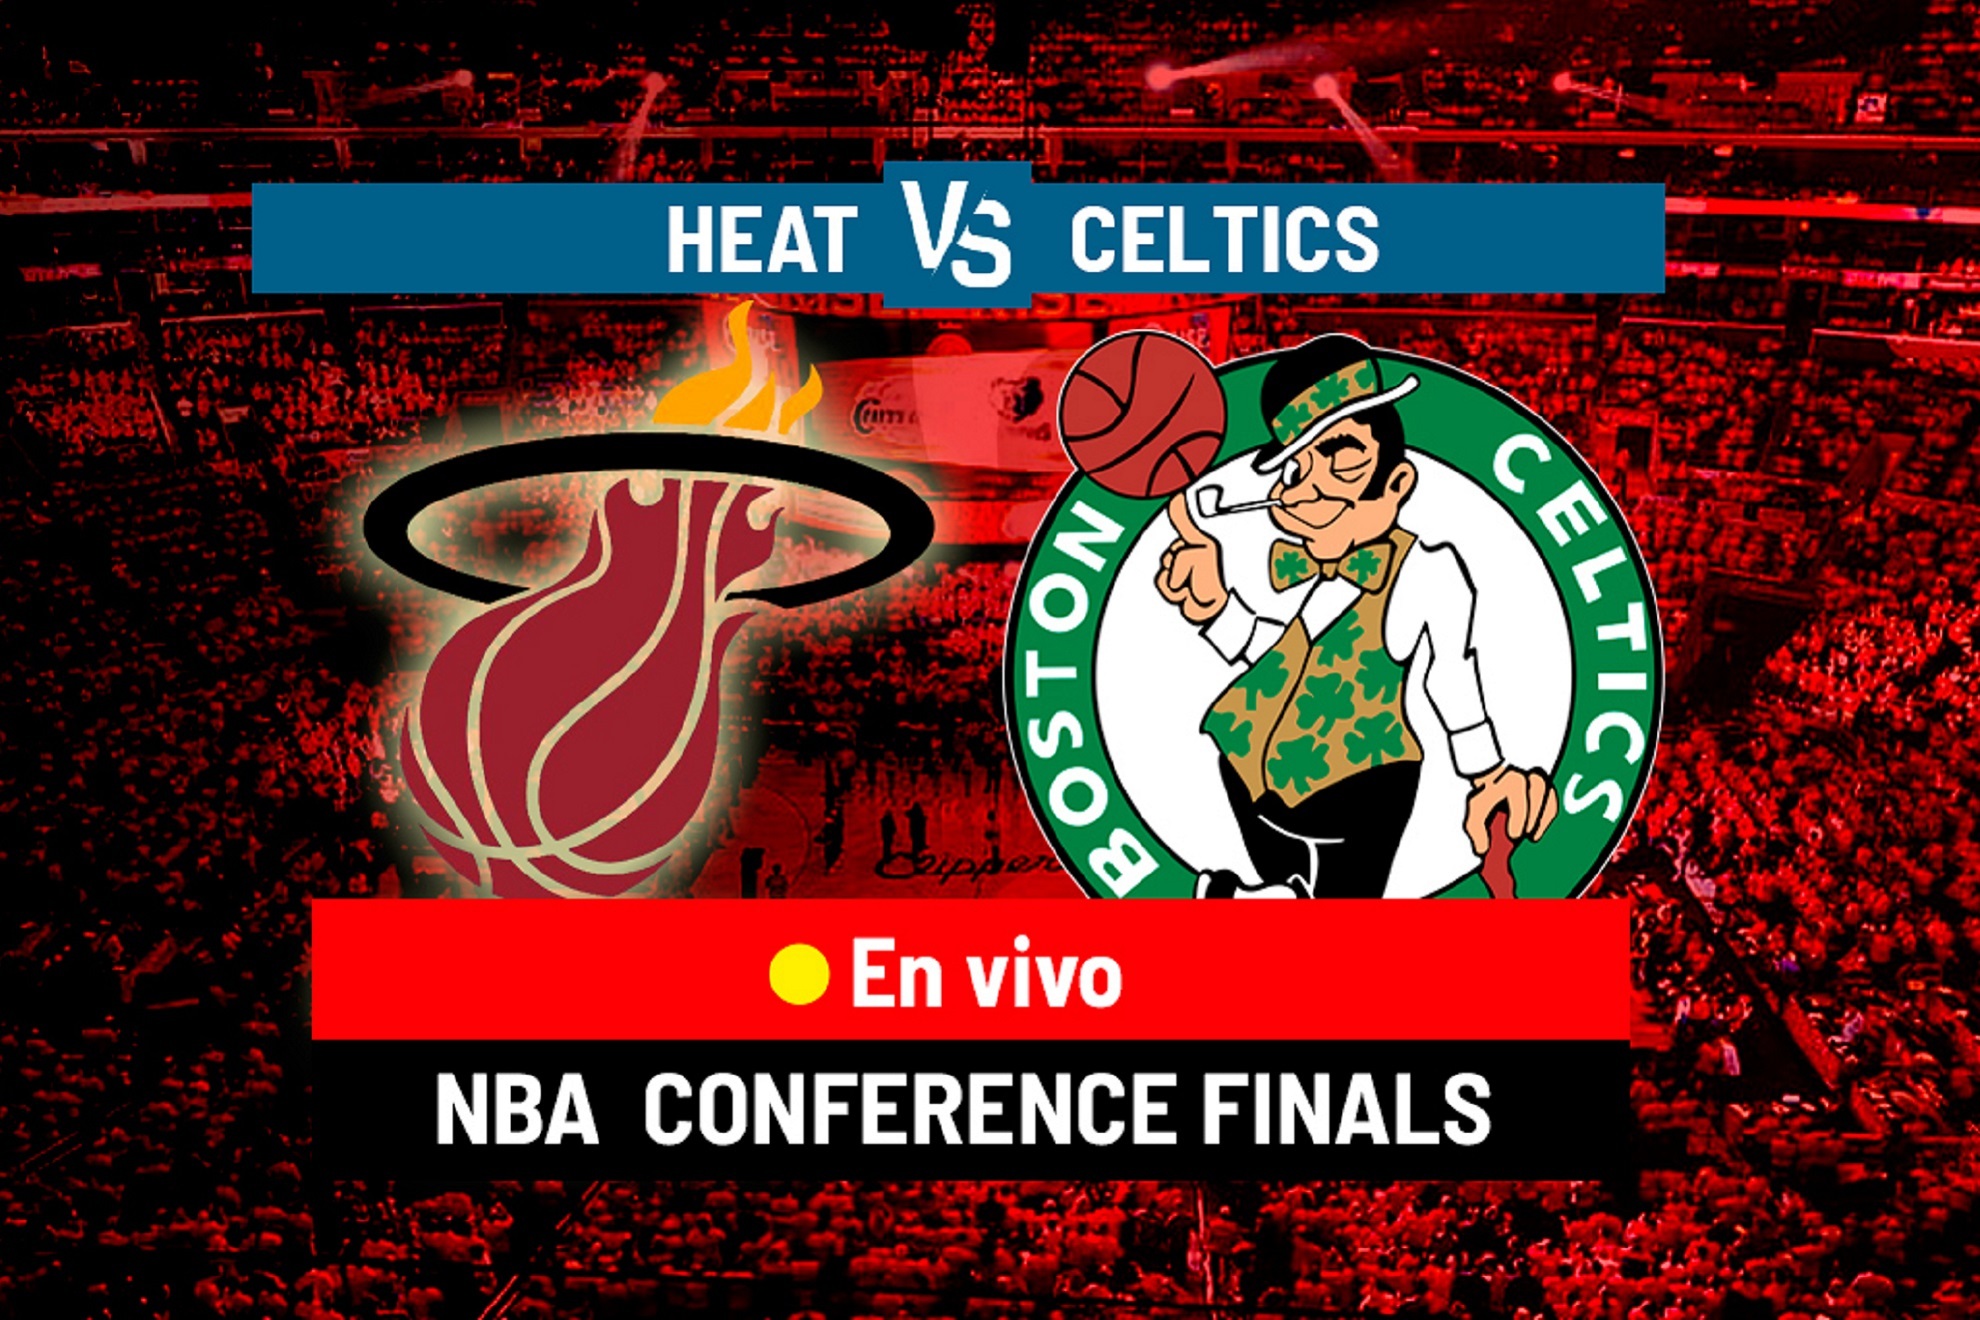 NBA Playoffs Miami Heat vs Boston Celtics EN VIVO, el Heat avanza a